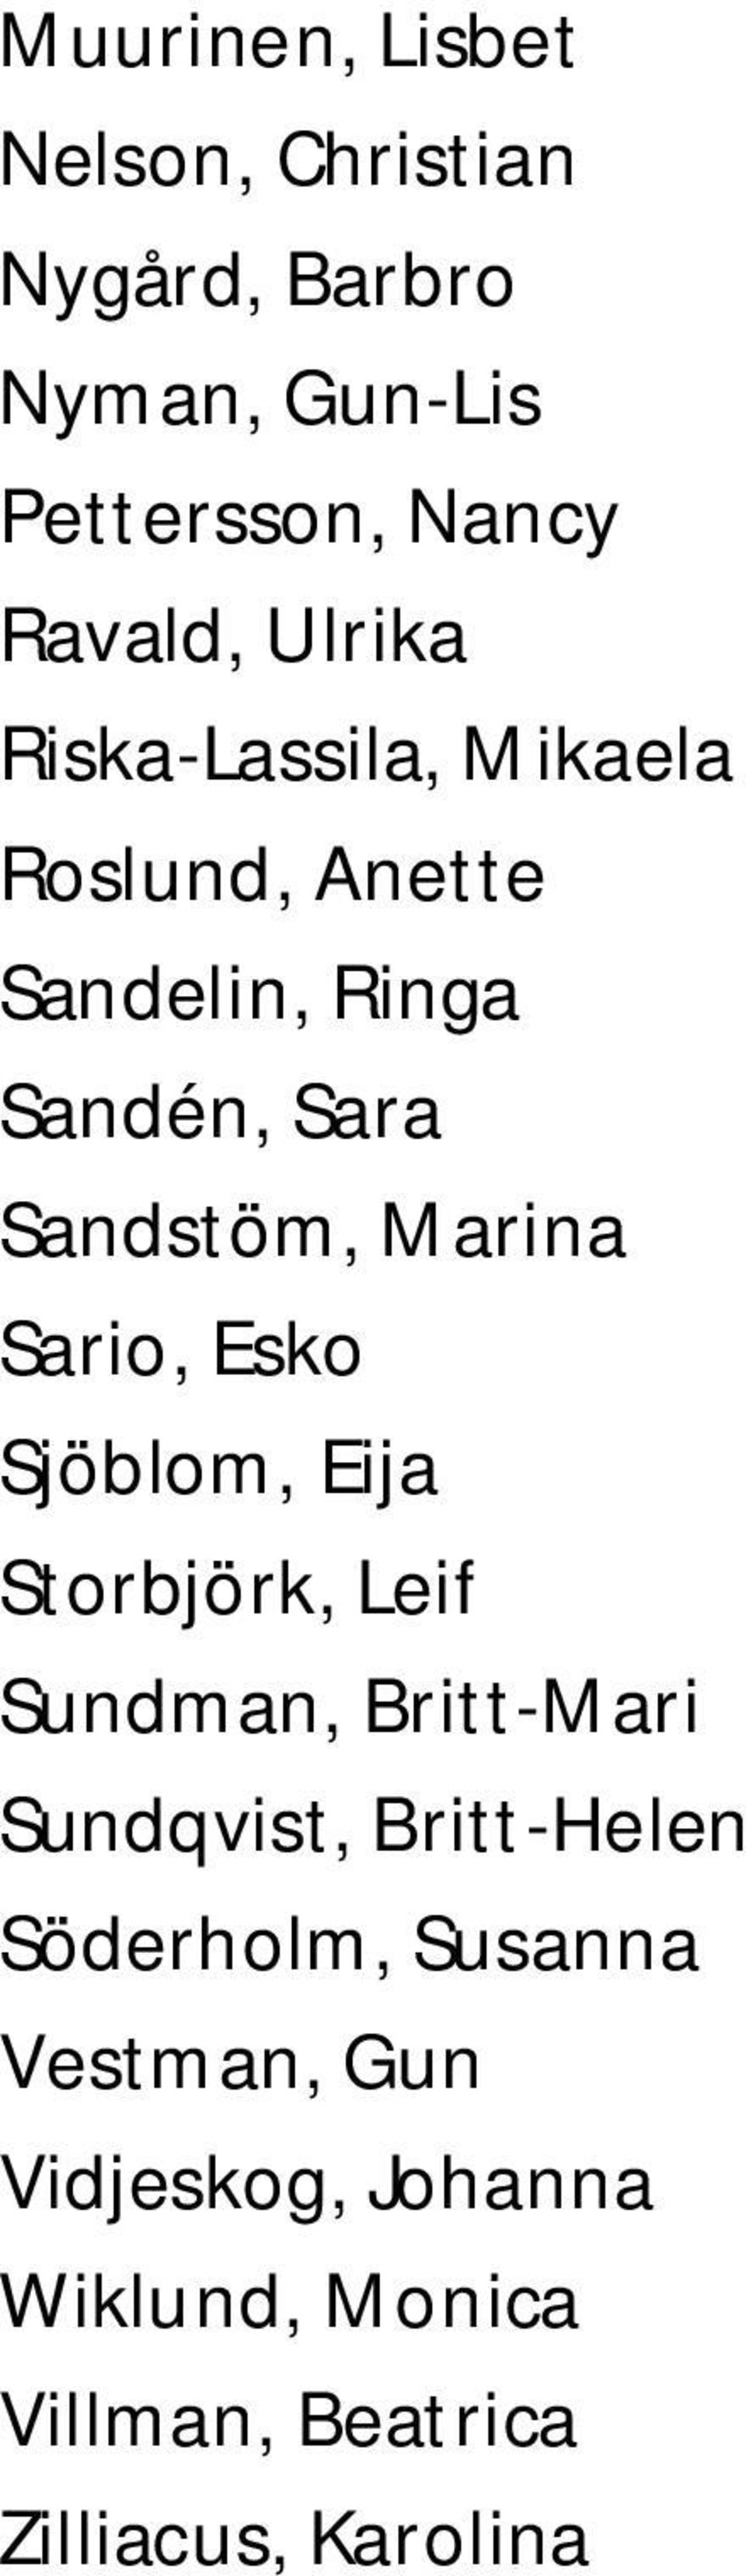 Sario, Esko Sjöblom, Eija Storbjörk, Leif Sundman, Britt-Mari Sundqvist, Britt-Helen